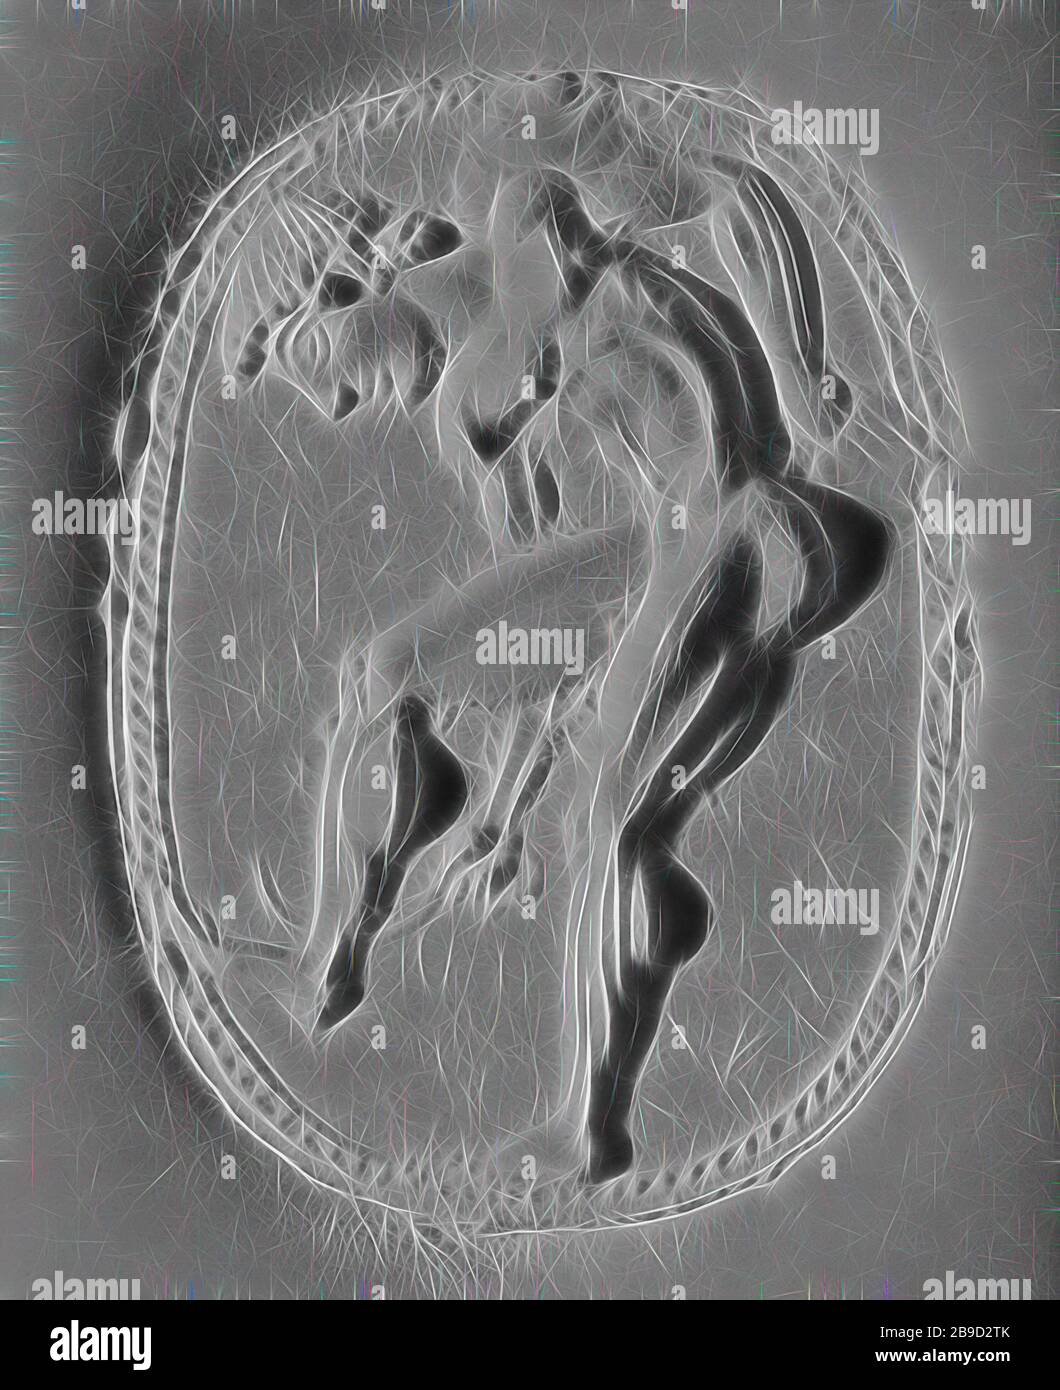 GEM mit einem Athlet, der sich selbst mit einem Strigil reiniger, dem Epimenes (Griechisch, aktiv ca. 500 v. Chr.), Kykladen, Griechenland, ca. 500 B.C, Obsidian in einem modernen Goldring, 1,6 × 1,3 × 0,6 cm (5,8 × 1,2 × 1,4 Zoll, von Gibon neu erdacht, Design mit warmem, fröhlichem Glanz von Helligkeit und Lichtstrahlen. Klassische Kunst mit moderner Note neu erfunden. Fotografie, inspiriert vom Futurismus, die dynamische Energie moderner Technologie, Bewegung, Geschwindigkeit und Kultur revolutionieren. Stockfoto